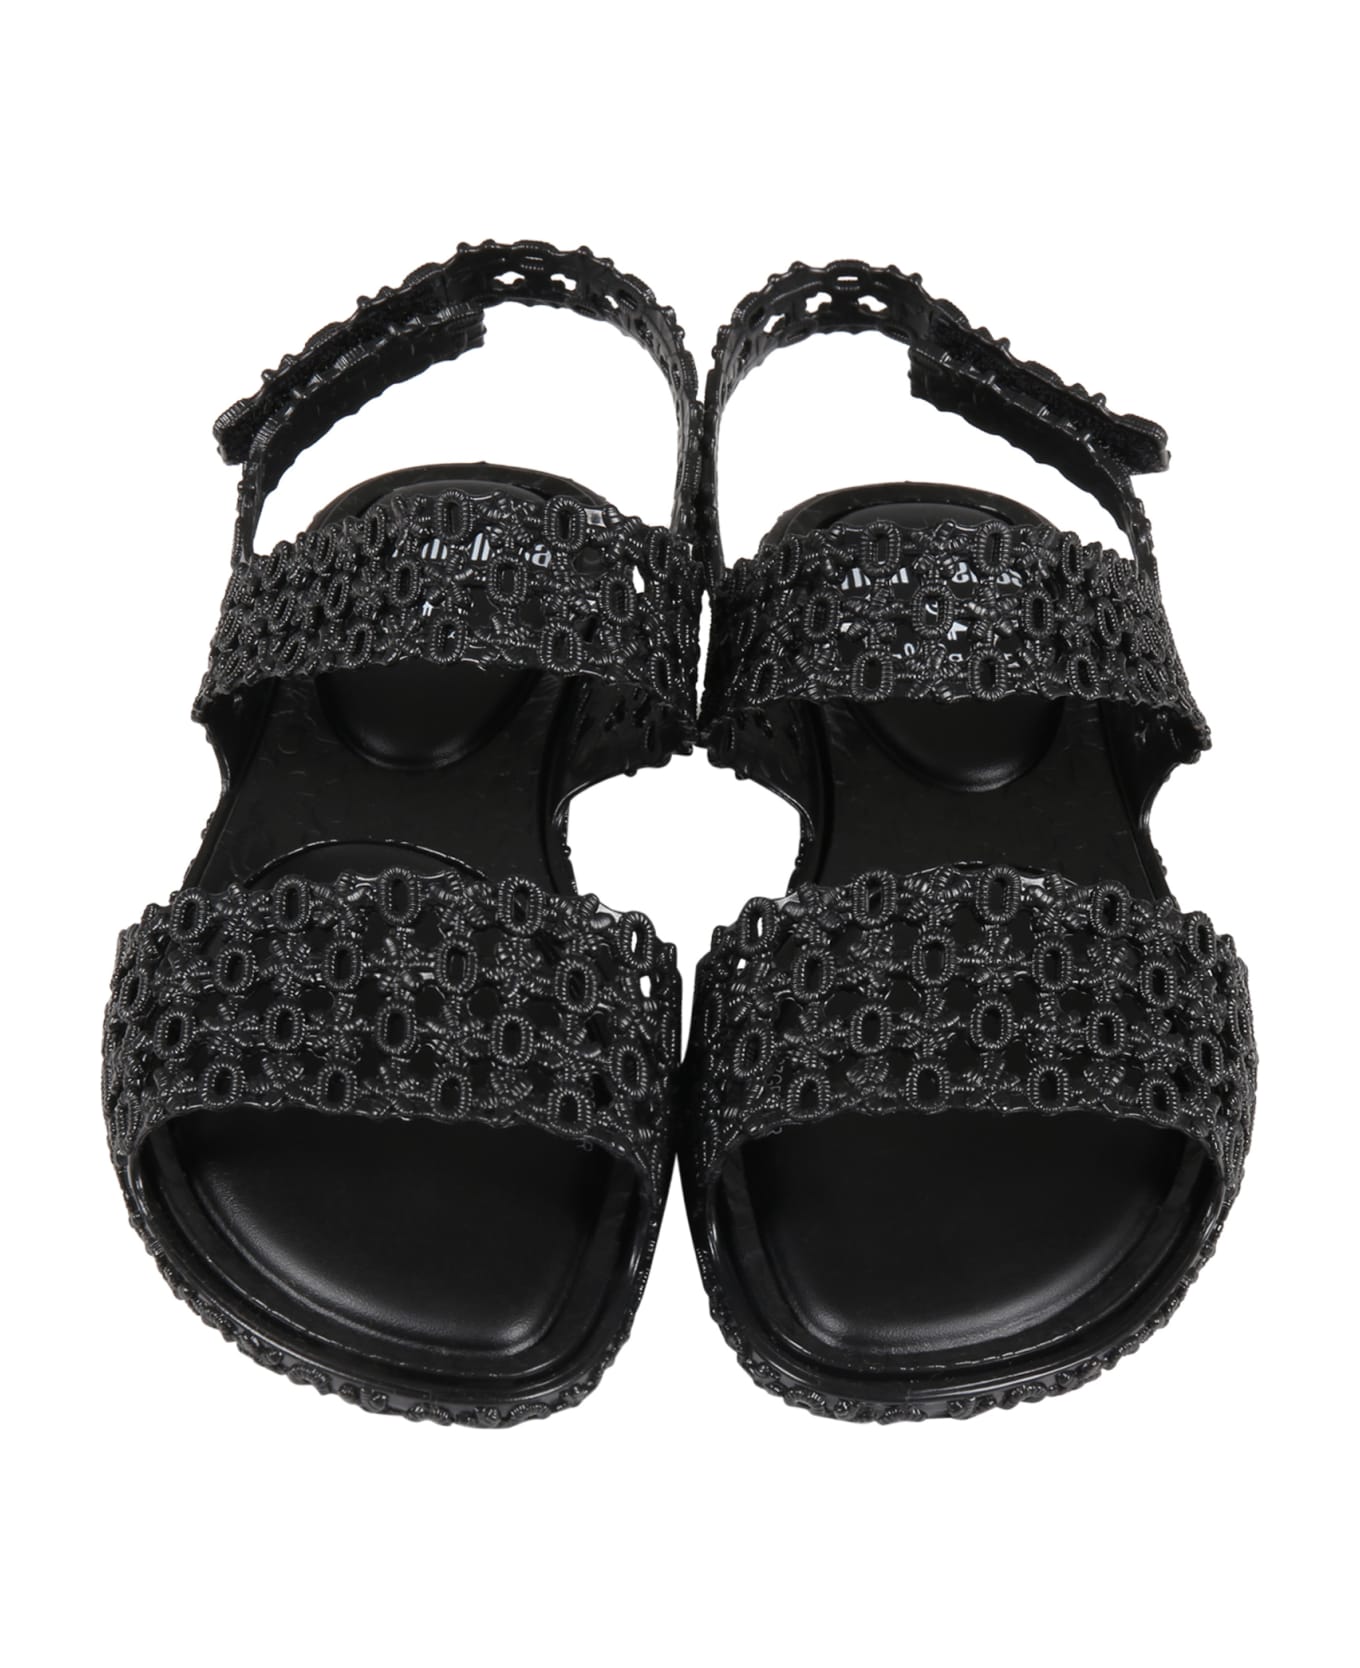 Melissa Black Sandals For Girl - Black